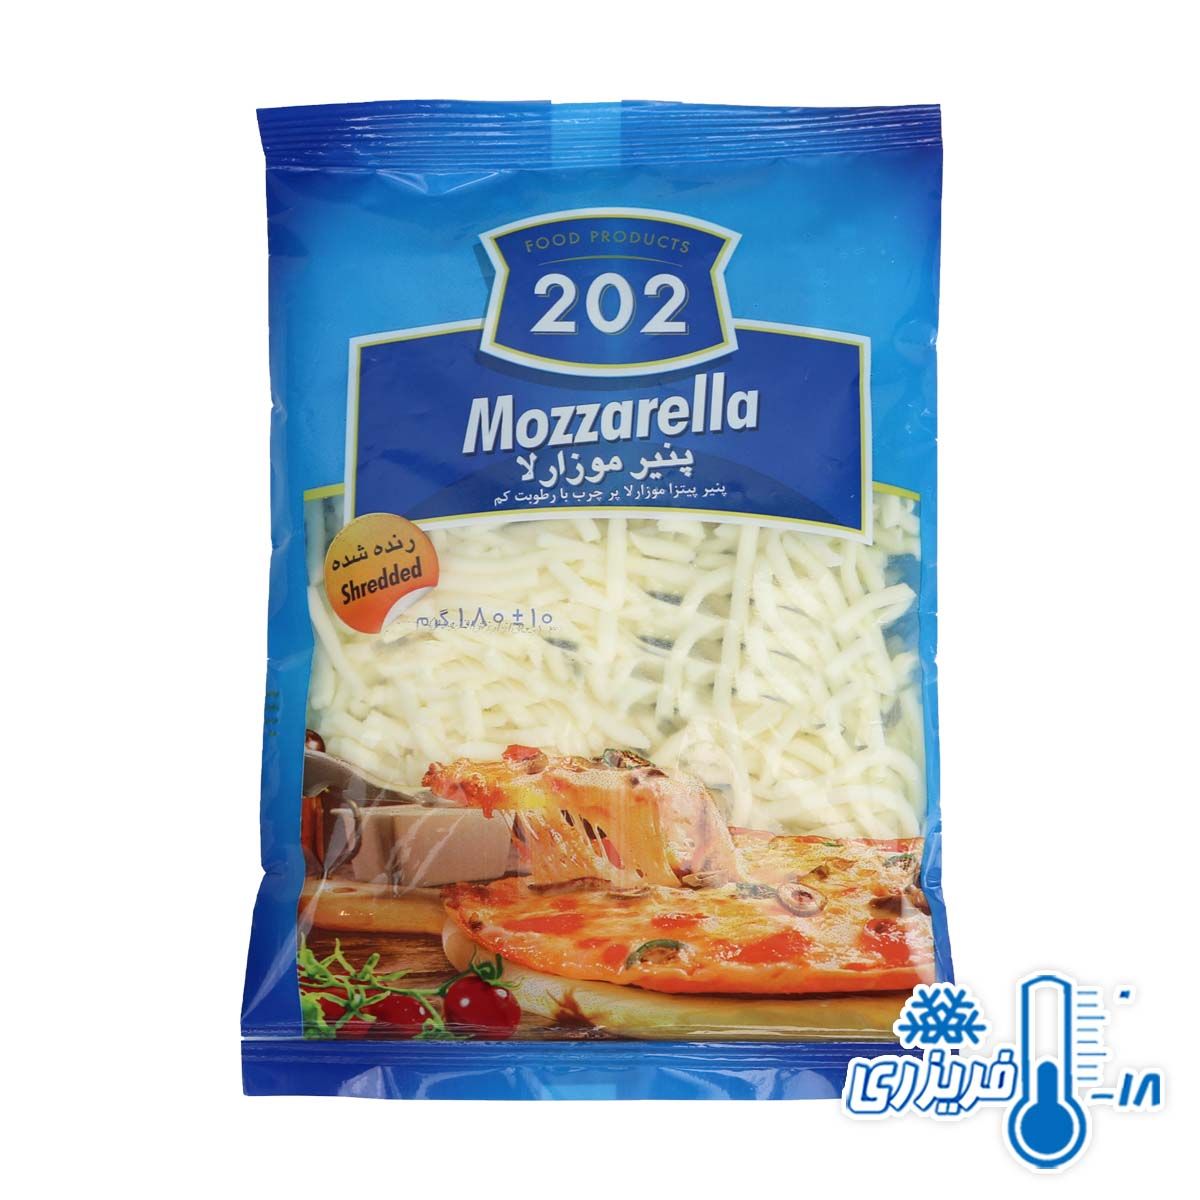 پنیر پیتزا موزارلا پر چرب رنده شده برند 202 وزن 180 گرمی